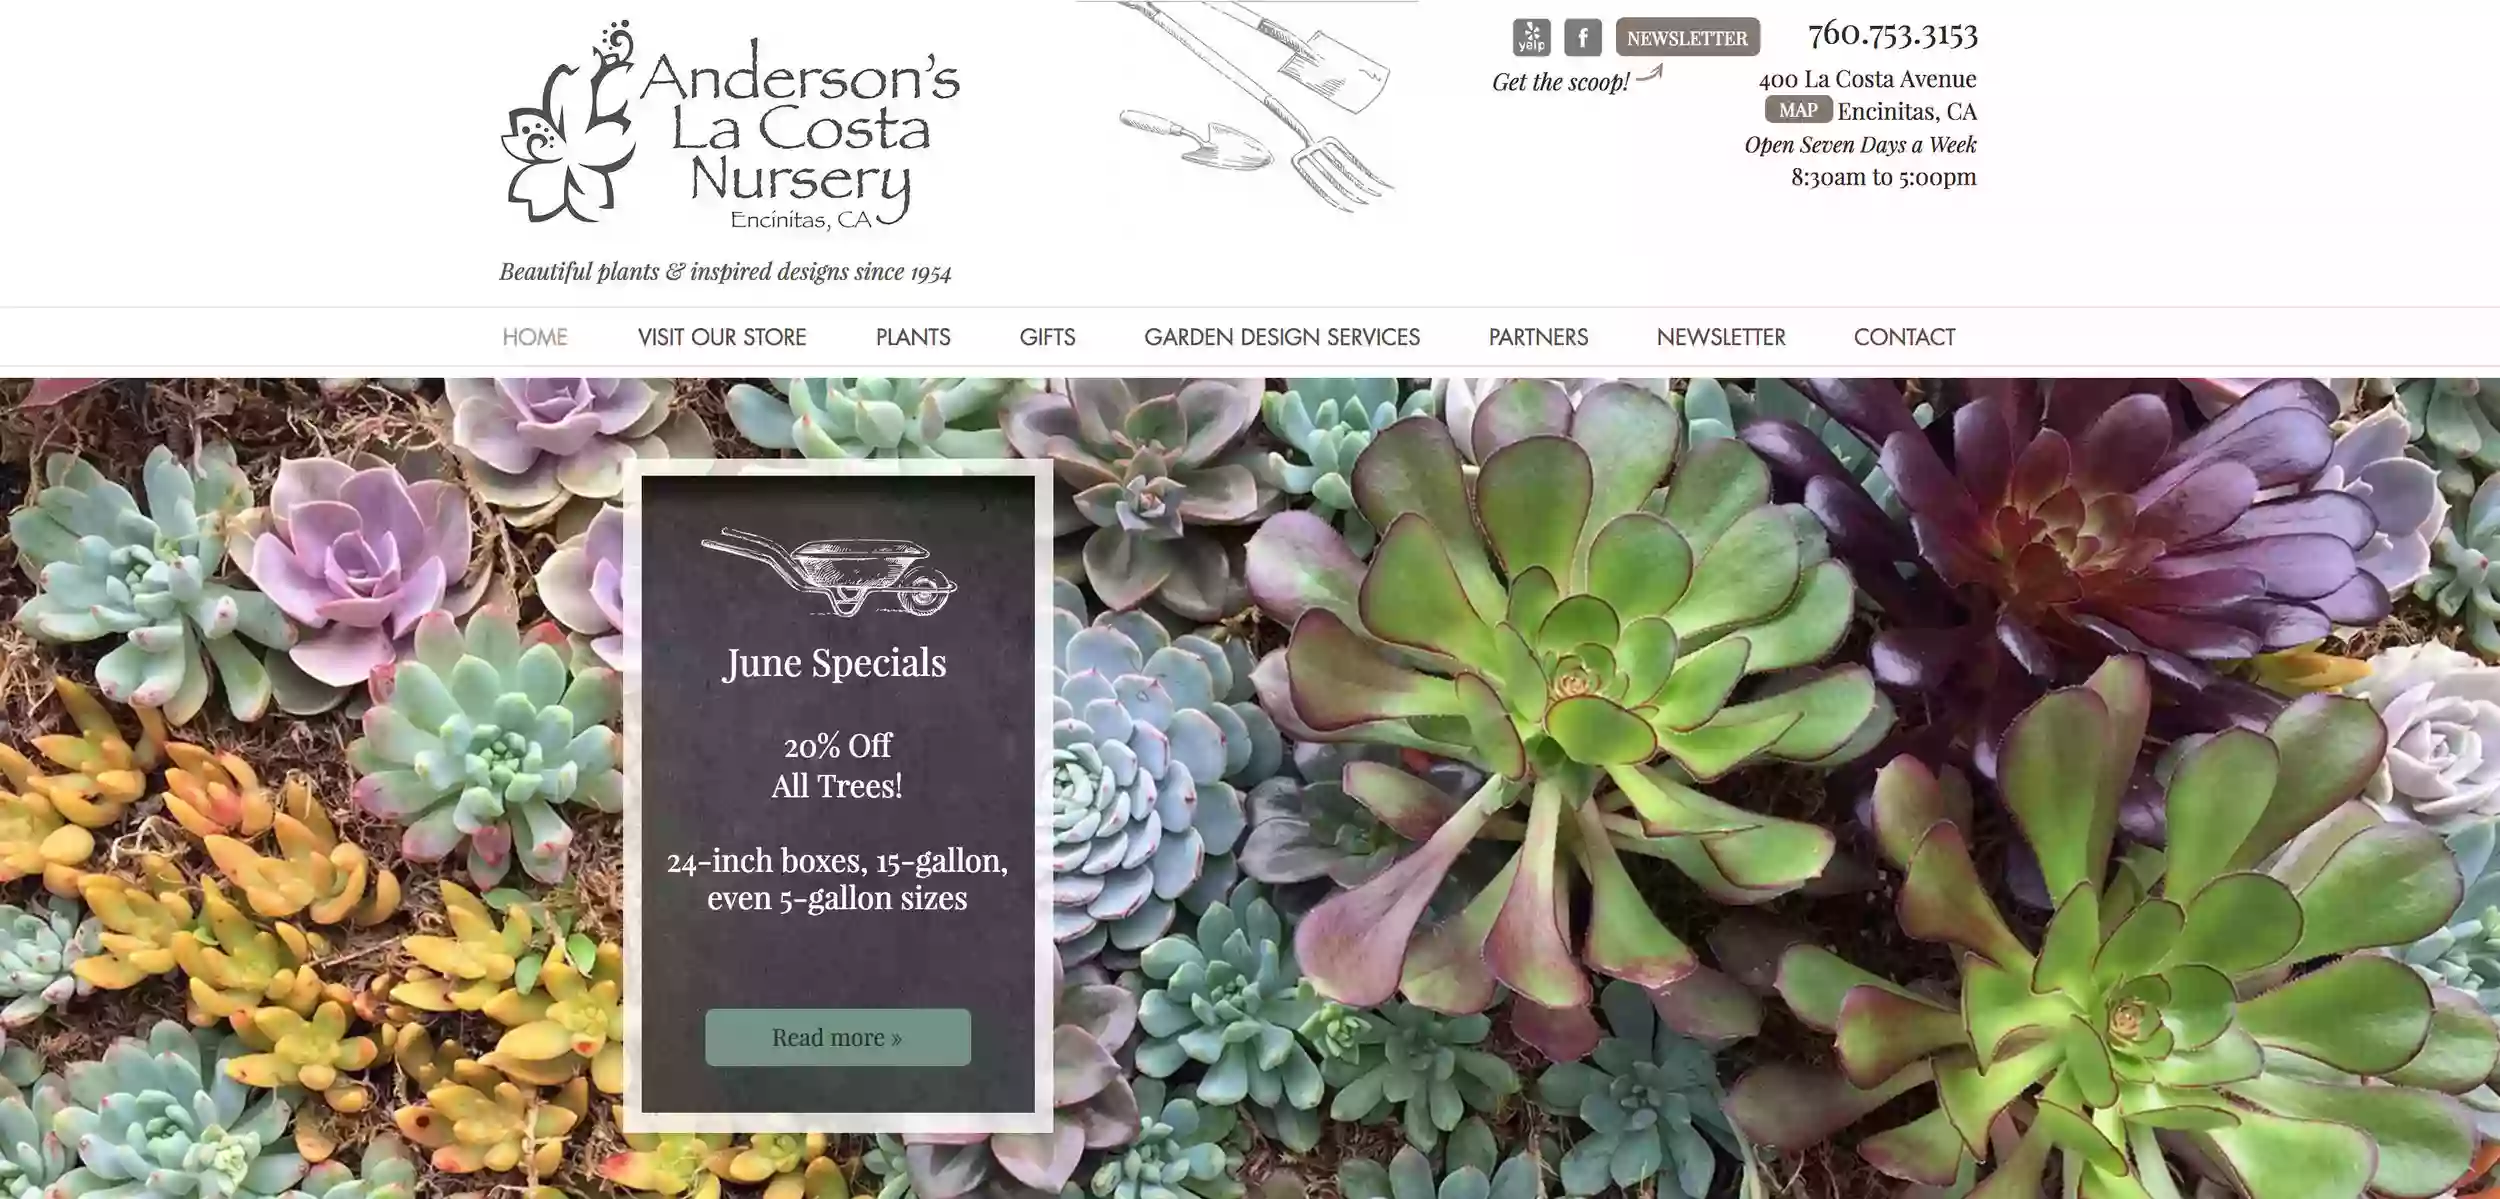 Anderson's La Costa Nursery